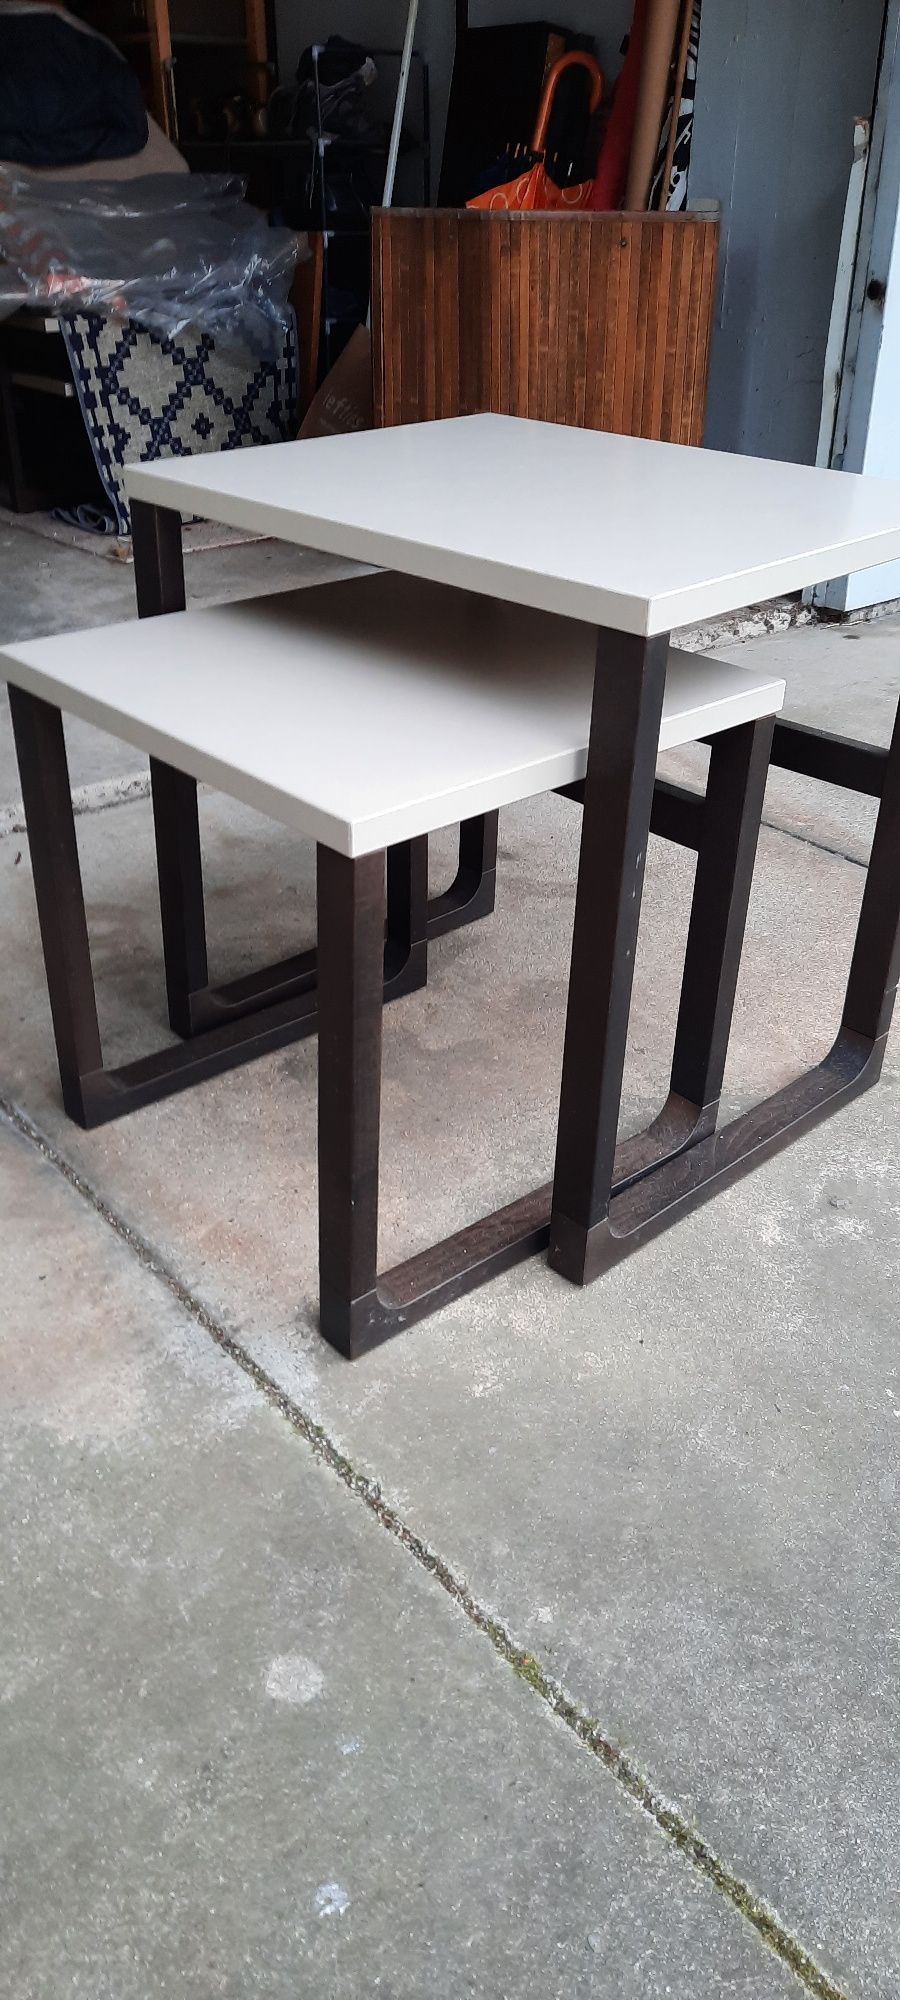 2 mesas de apoio IKEA